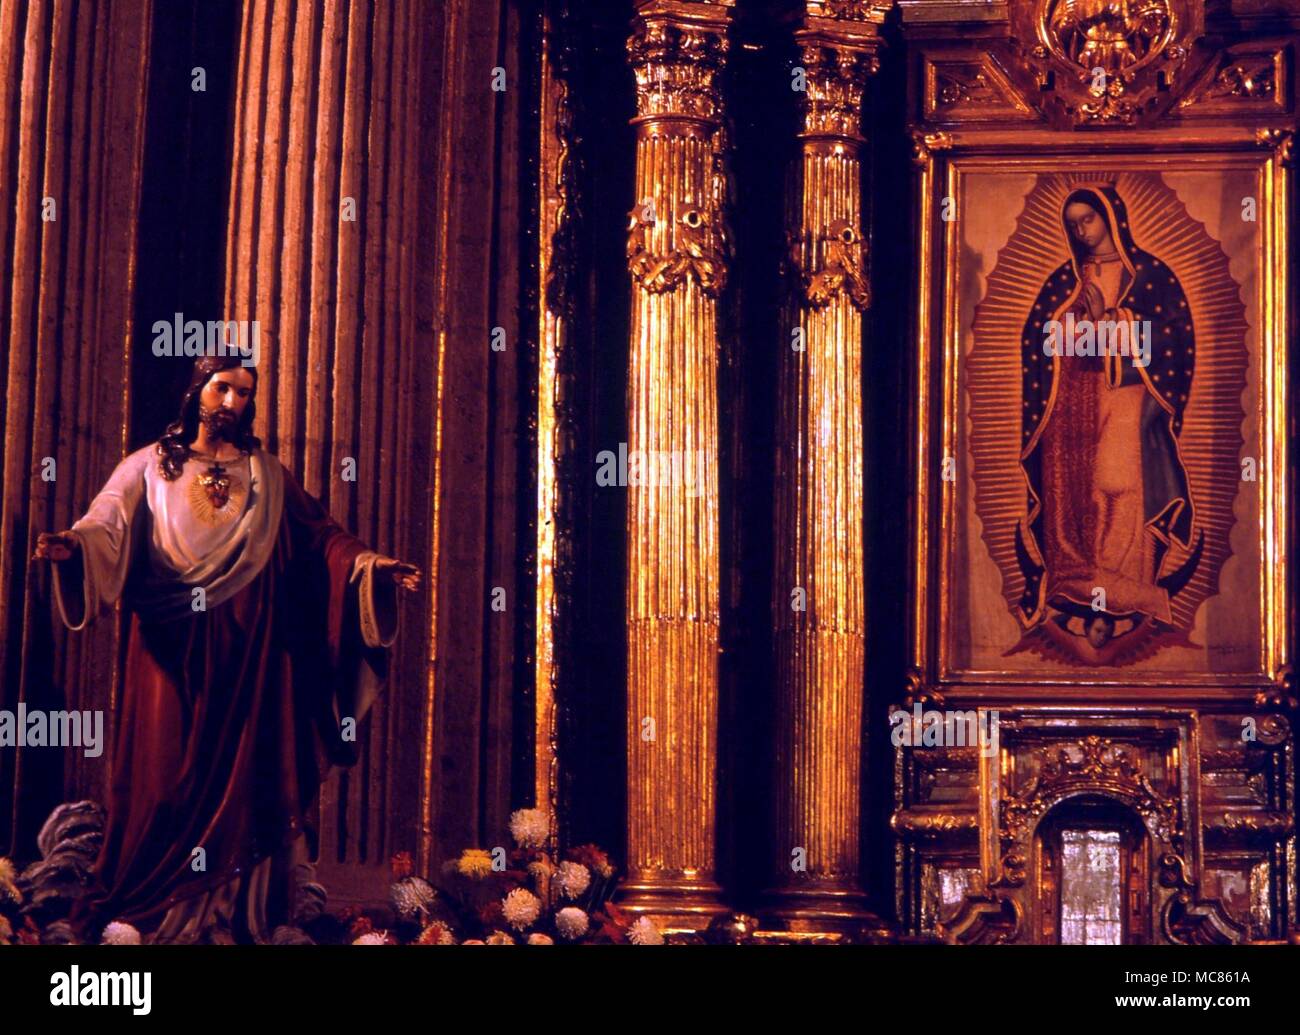 La peinture chrétienne de la Vierge de Guadalupe (qui ont comparu à l'indien Juan Diego en 1531). La peinture est dans la chapelle du Petit plus, à la Villa Guadalupe, Mexico city Banque D'Images